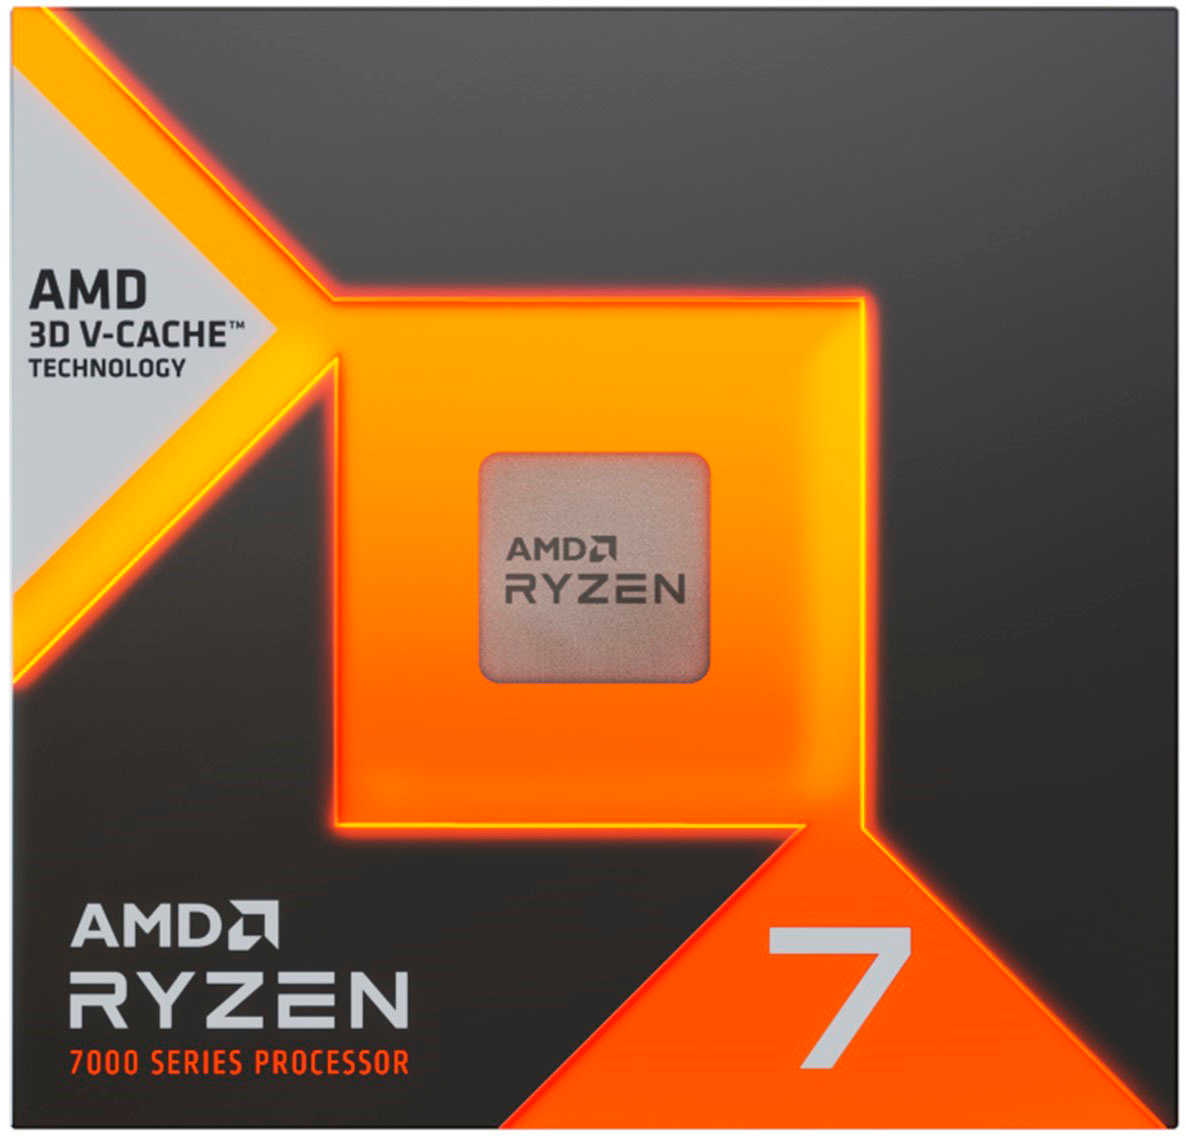 AMD Ryzen 7 7700X 8-core Zen4 desktop CPU price drops below $299 